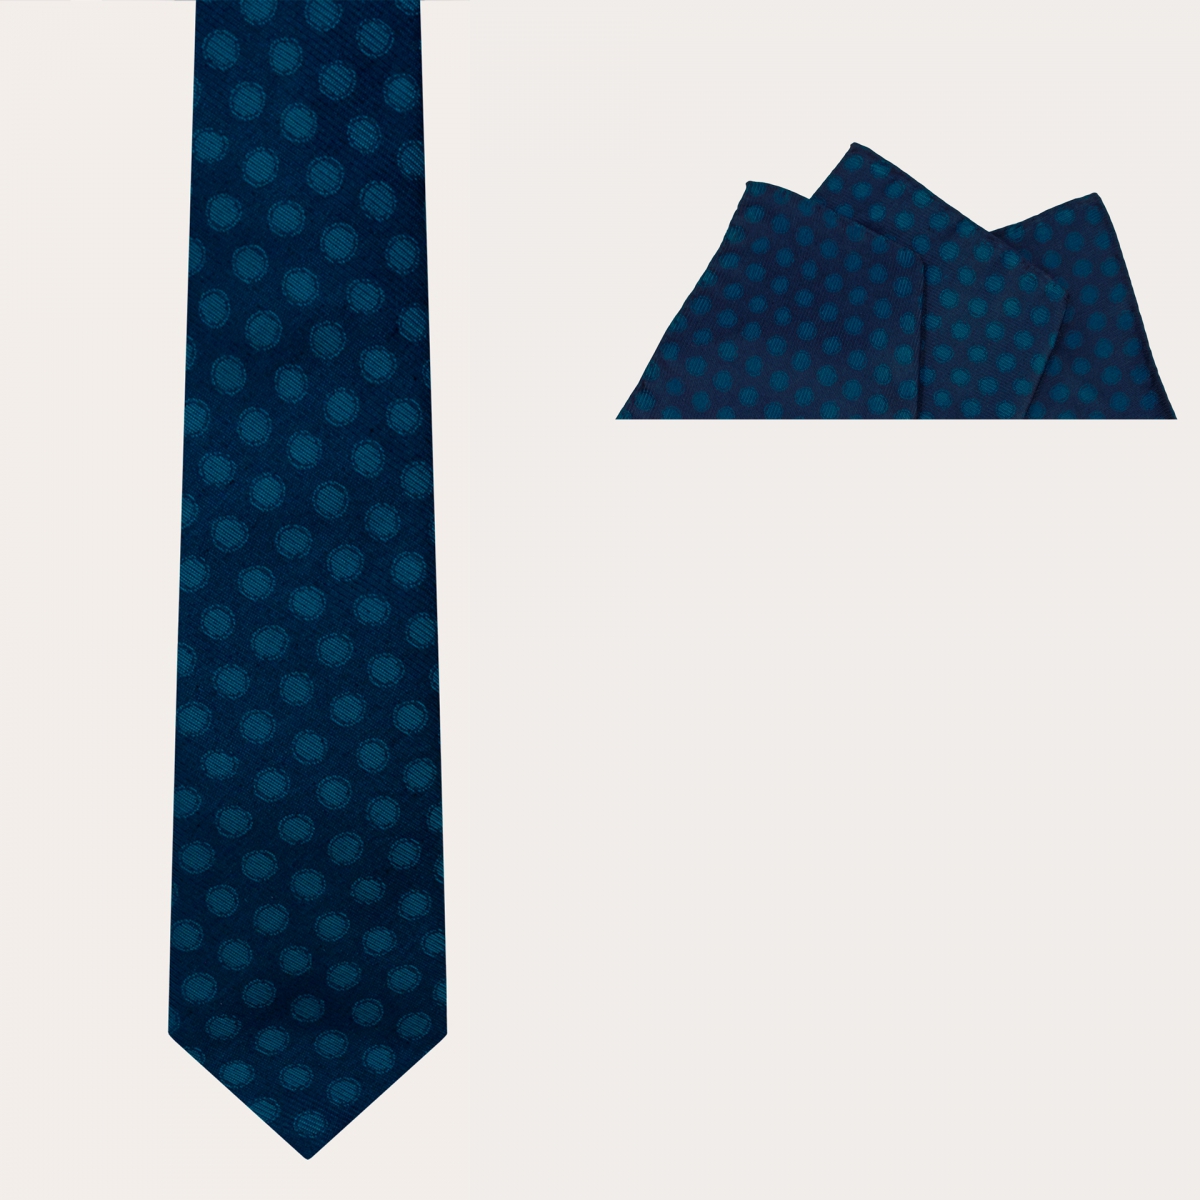 BRUCLE Elegante conjunto de corbata y pañuelo de bolsillo, azul con lunares petróleo